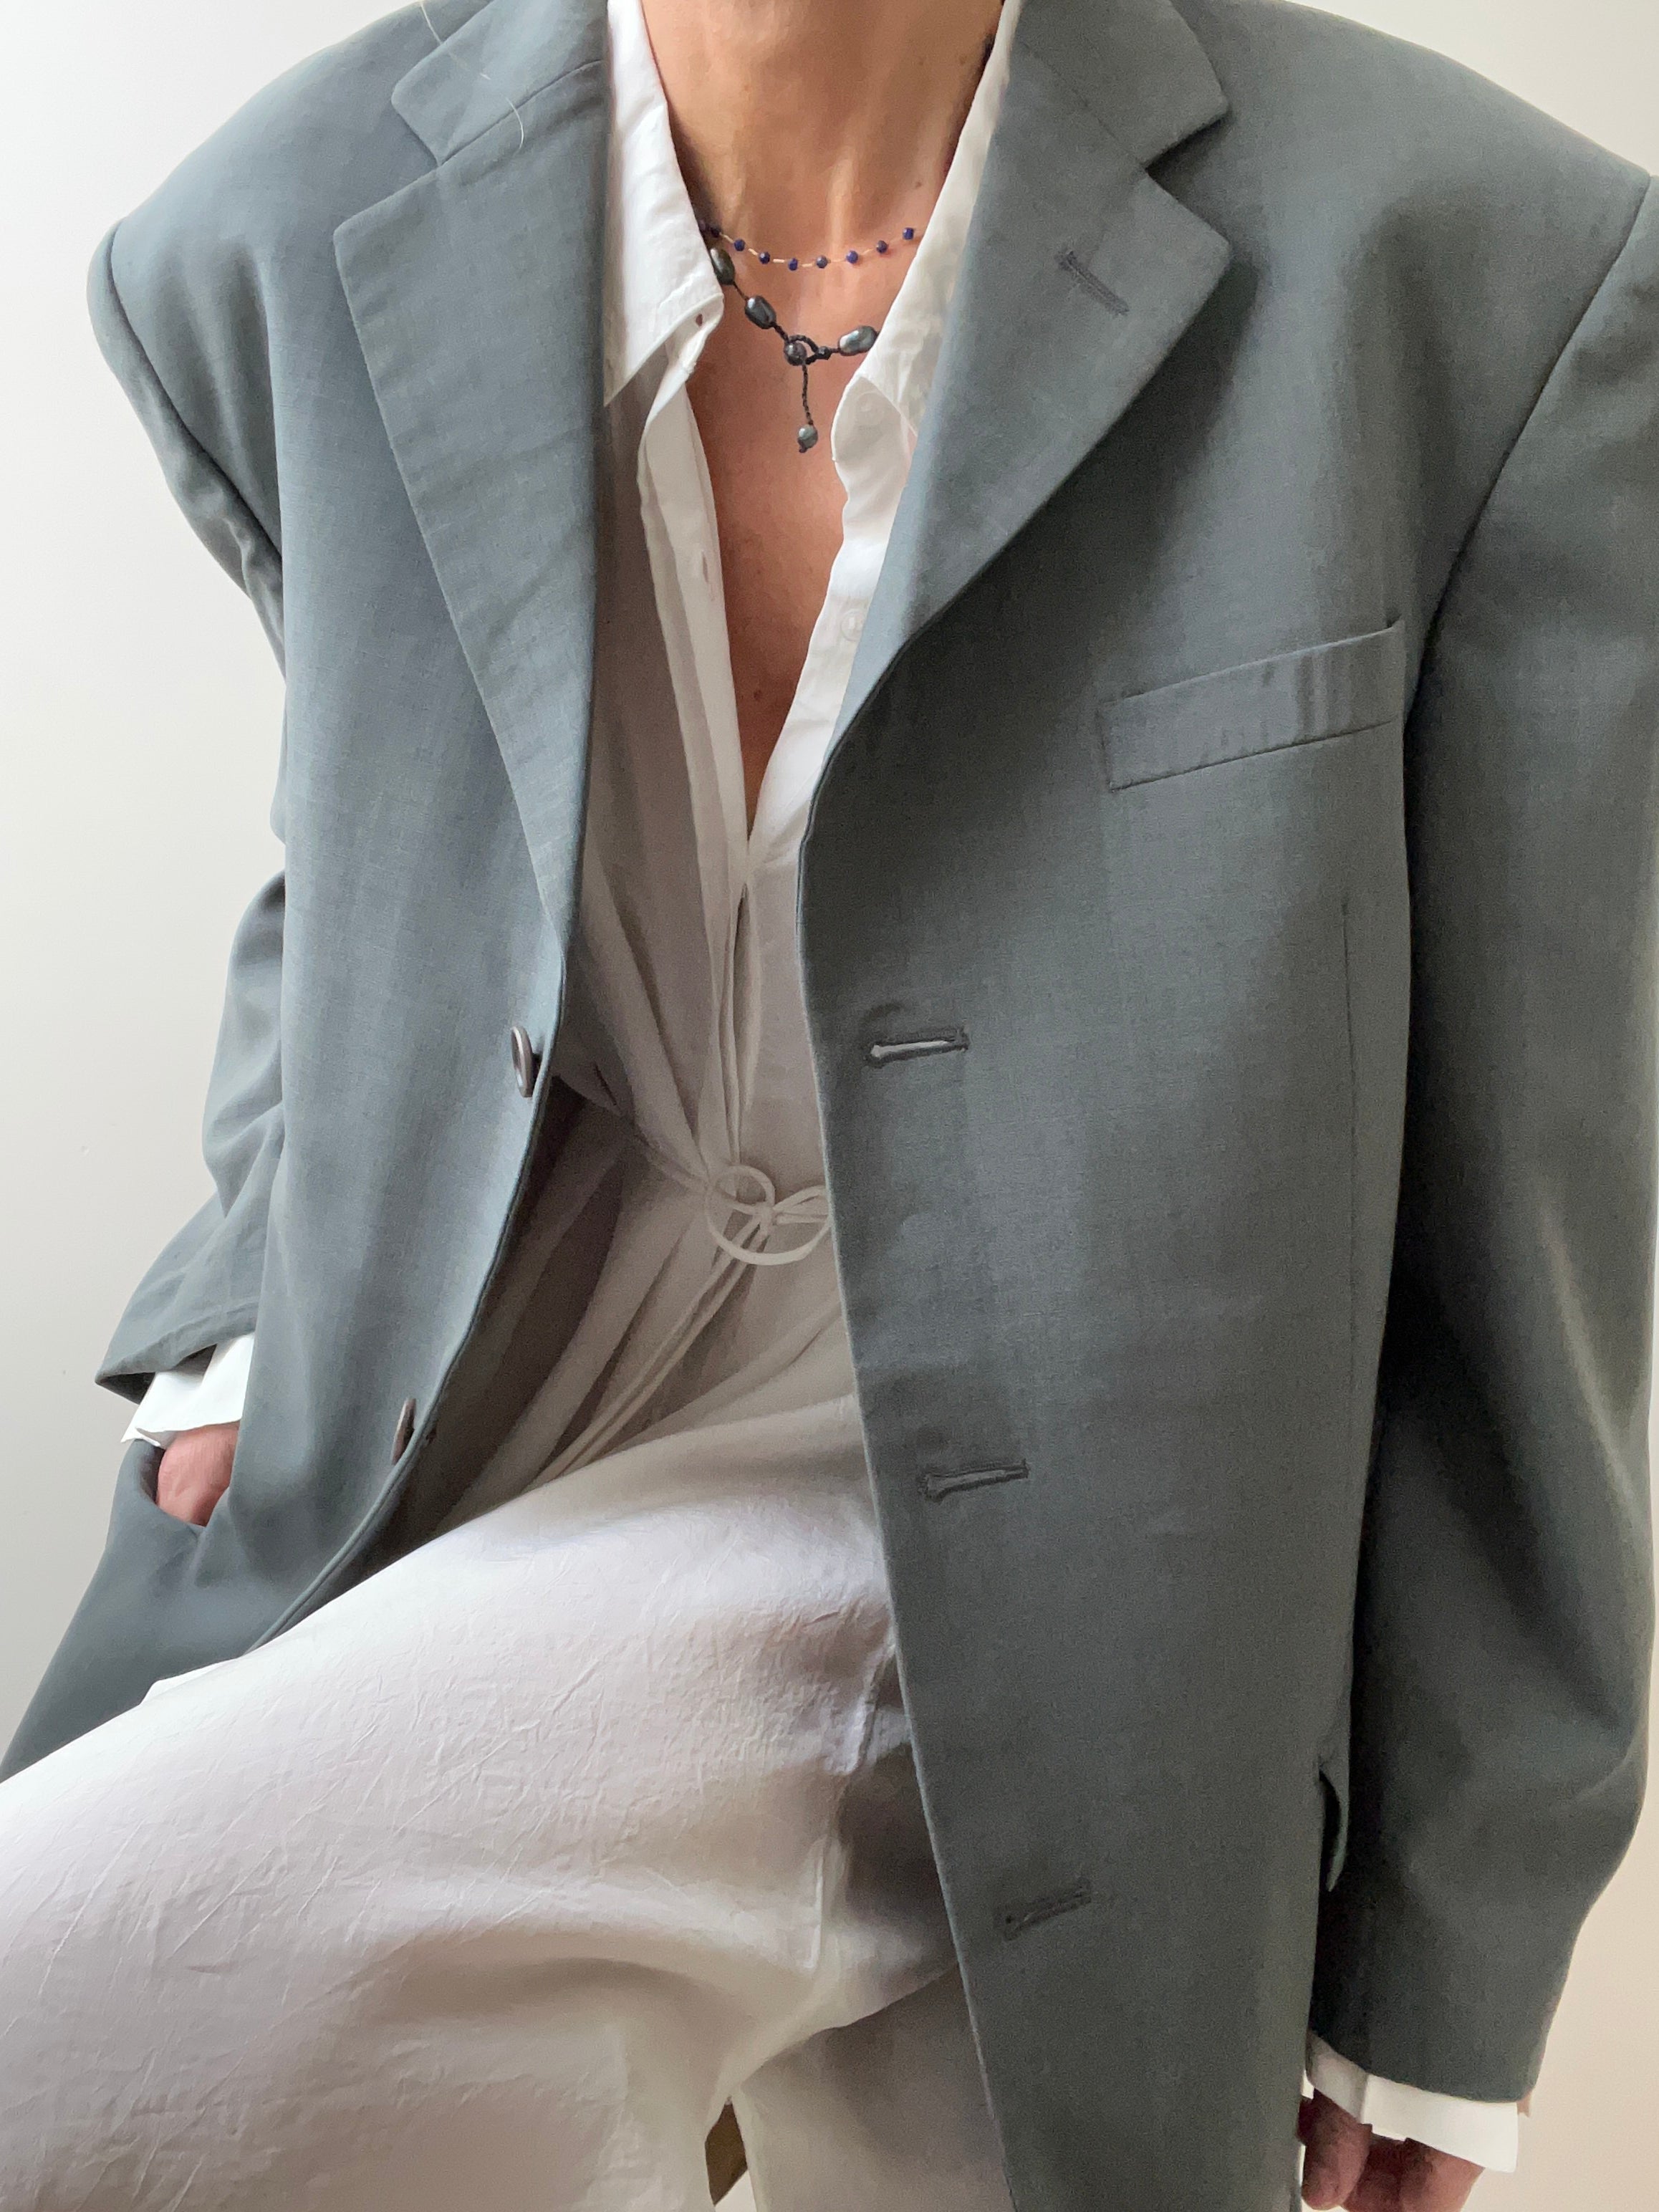 YSL Jackets Large-XLarge Vintage Oversized Grey Blazer